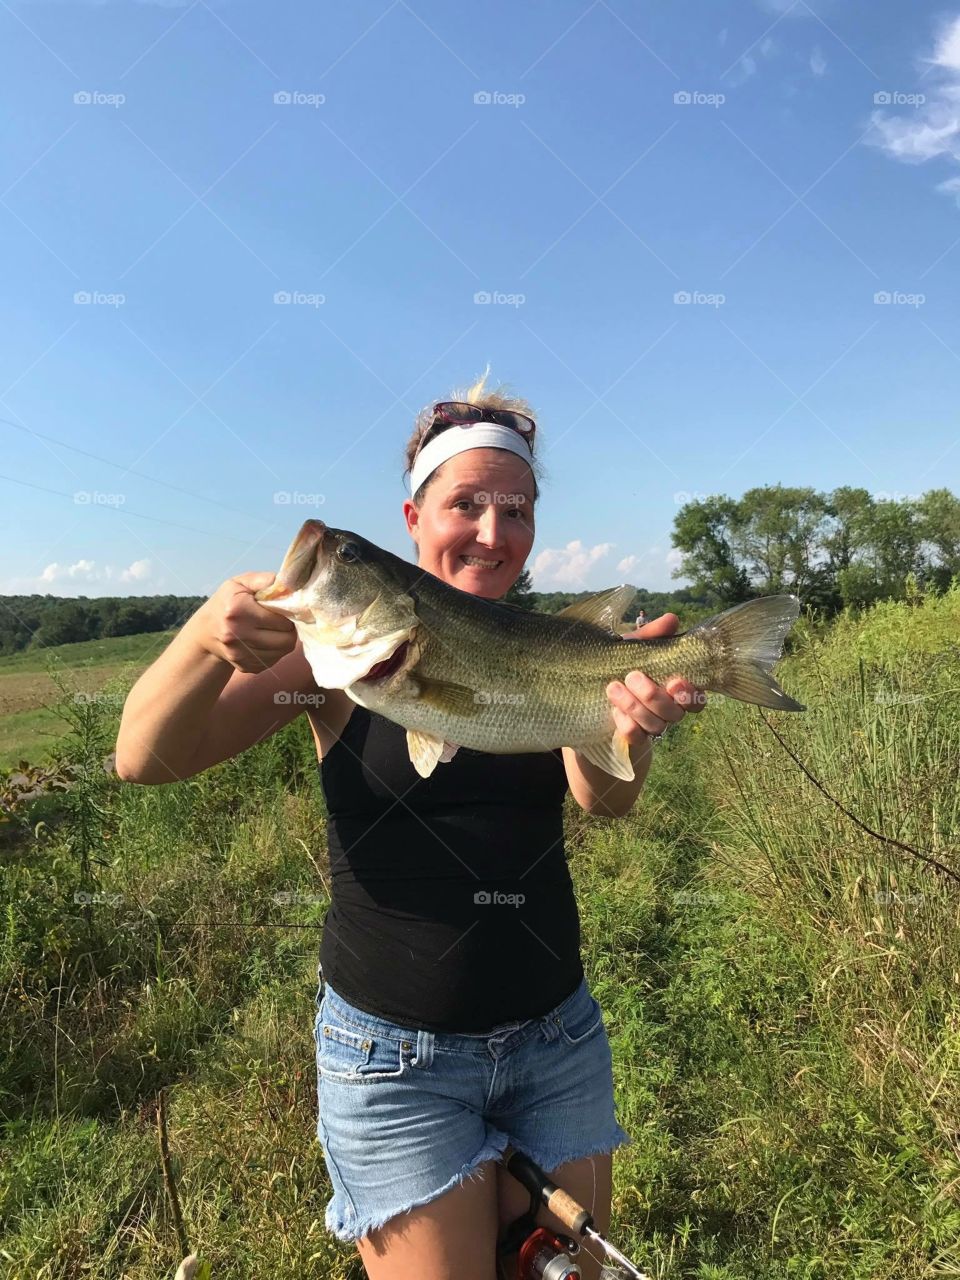 Girls fish too!